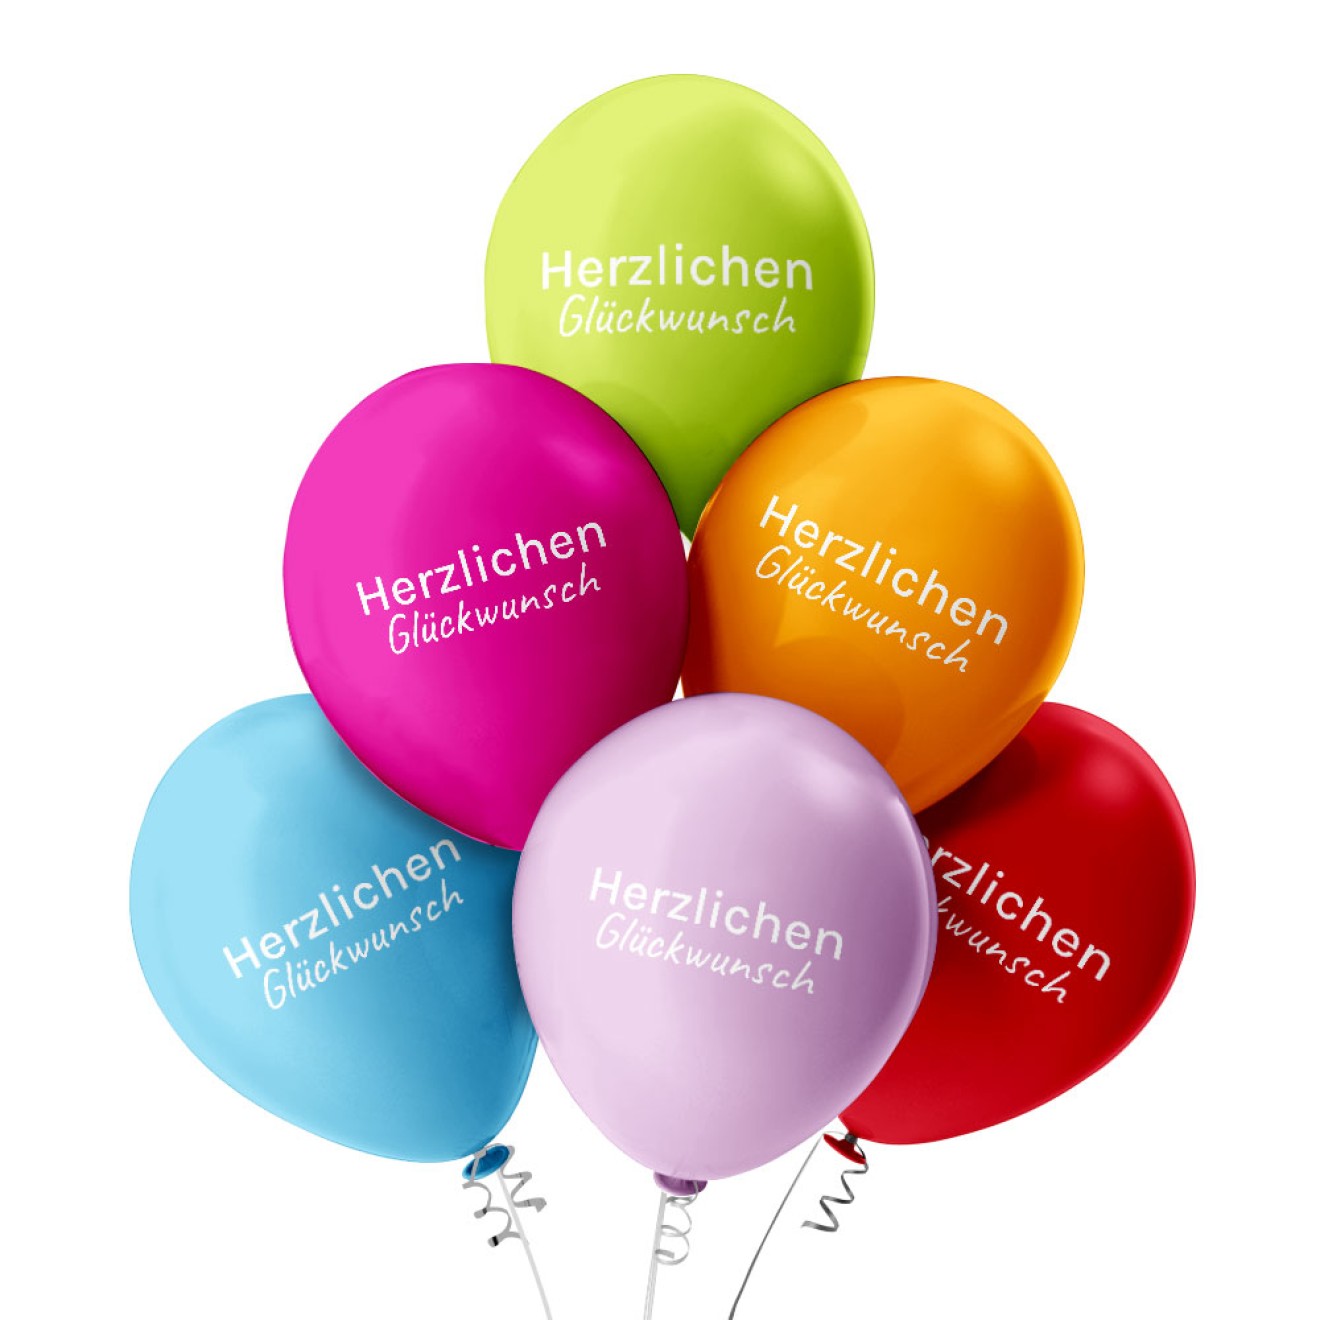 6 Luftballons Herzlichen Glückwunsch - Bunt gemischt